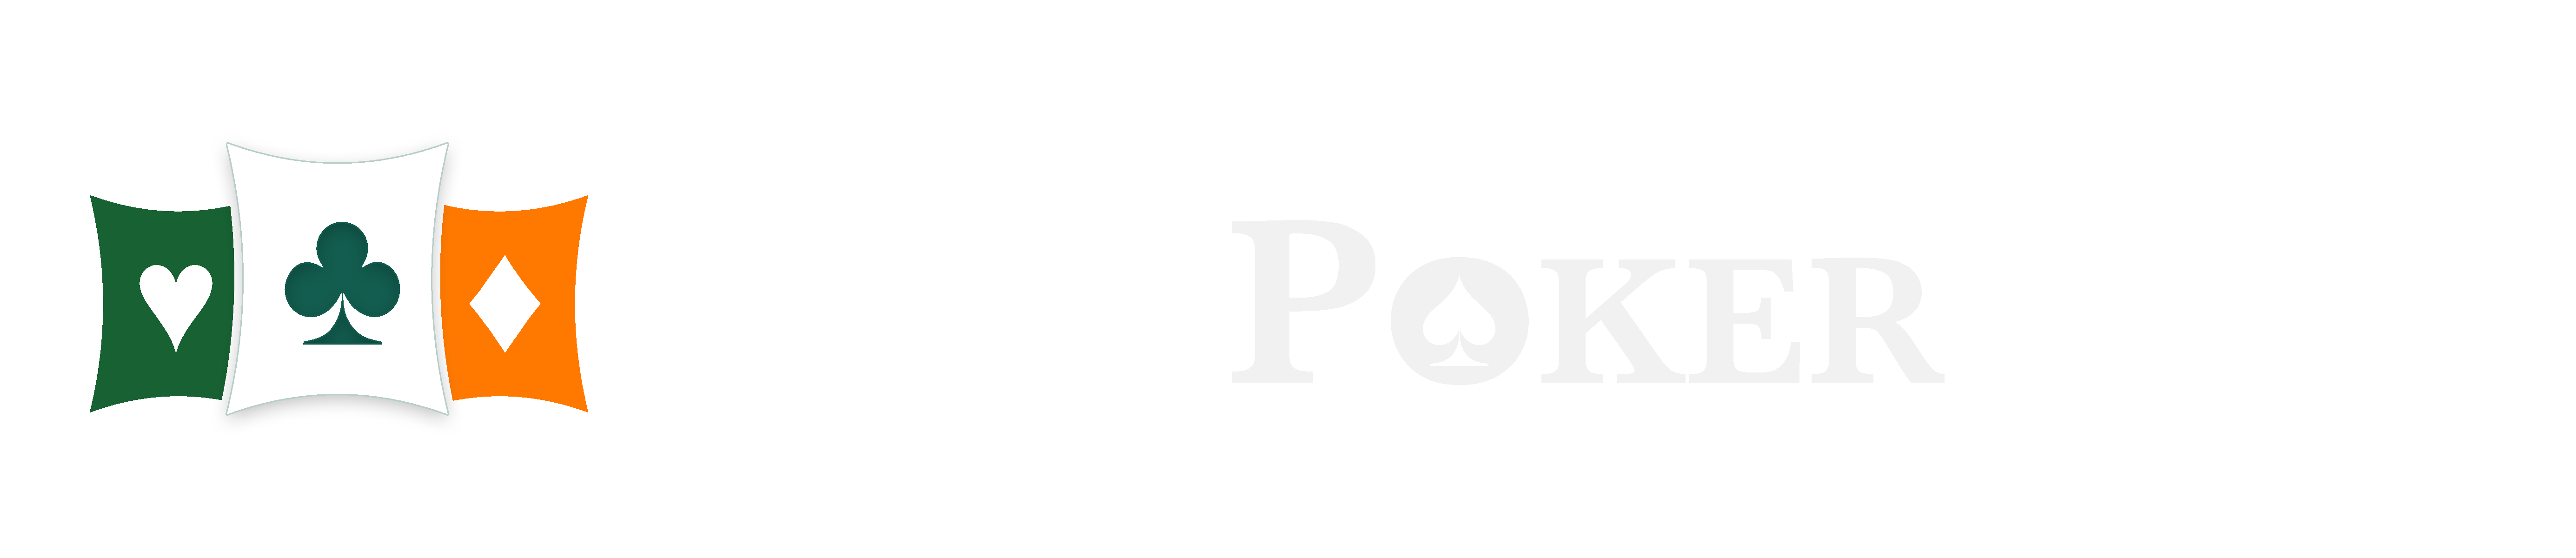 ipt-logo-tricolour-white-horizontal